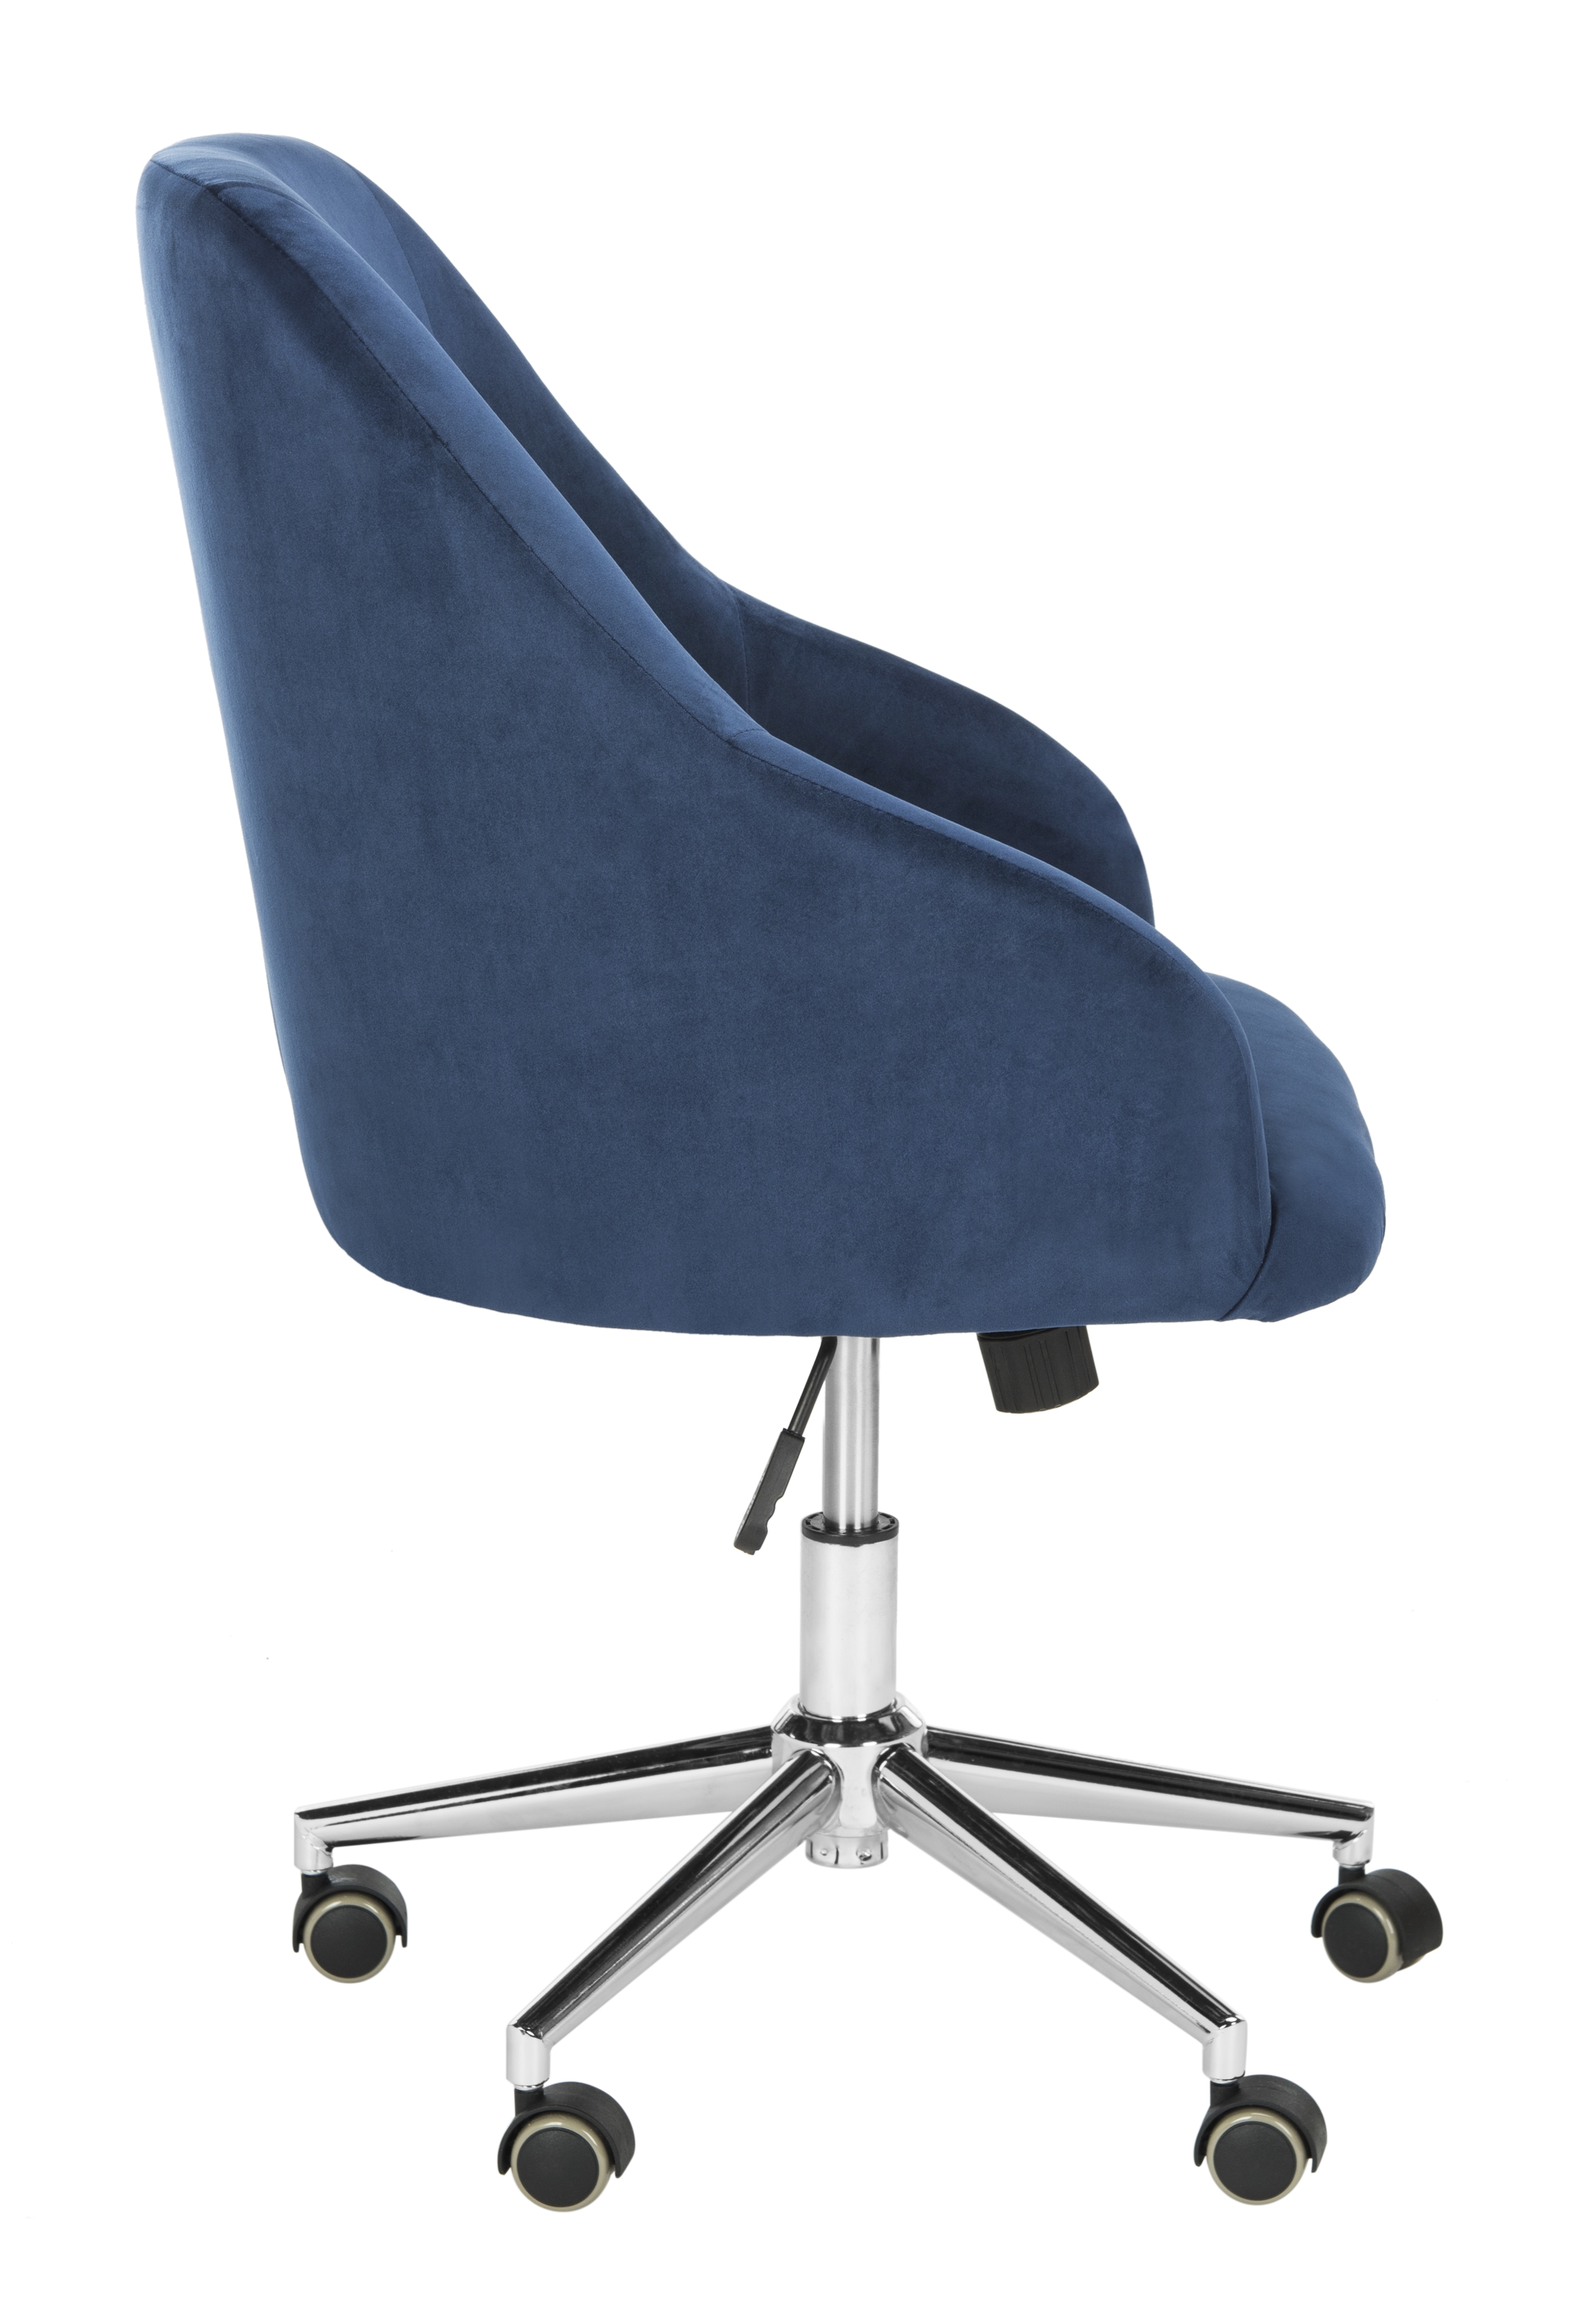 Adrienne Velvet Chrome Leg Swivel Office Chair - Navy/Chrome - Safavieh - Image 2